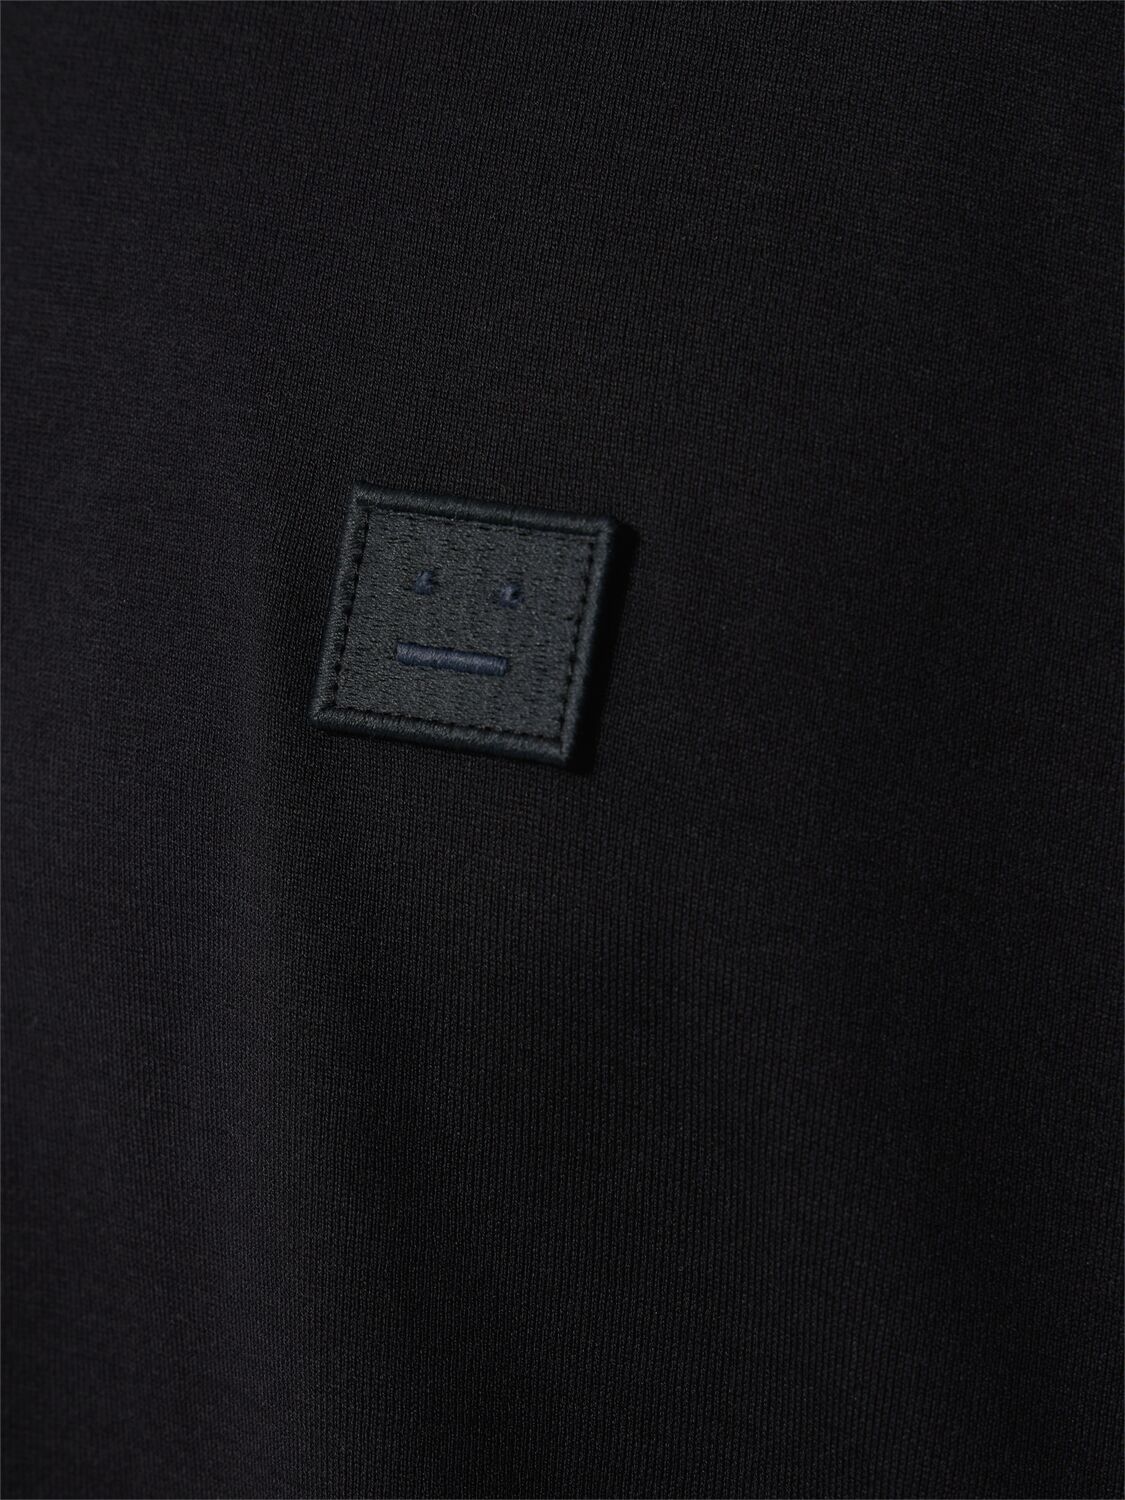 Shop Acne Studios Nace Face Patch Cotton T-shirt In Black